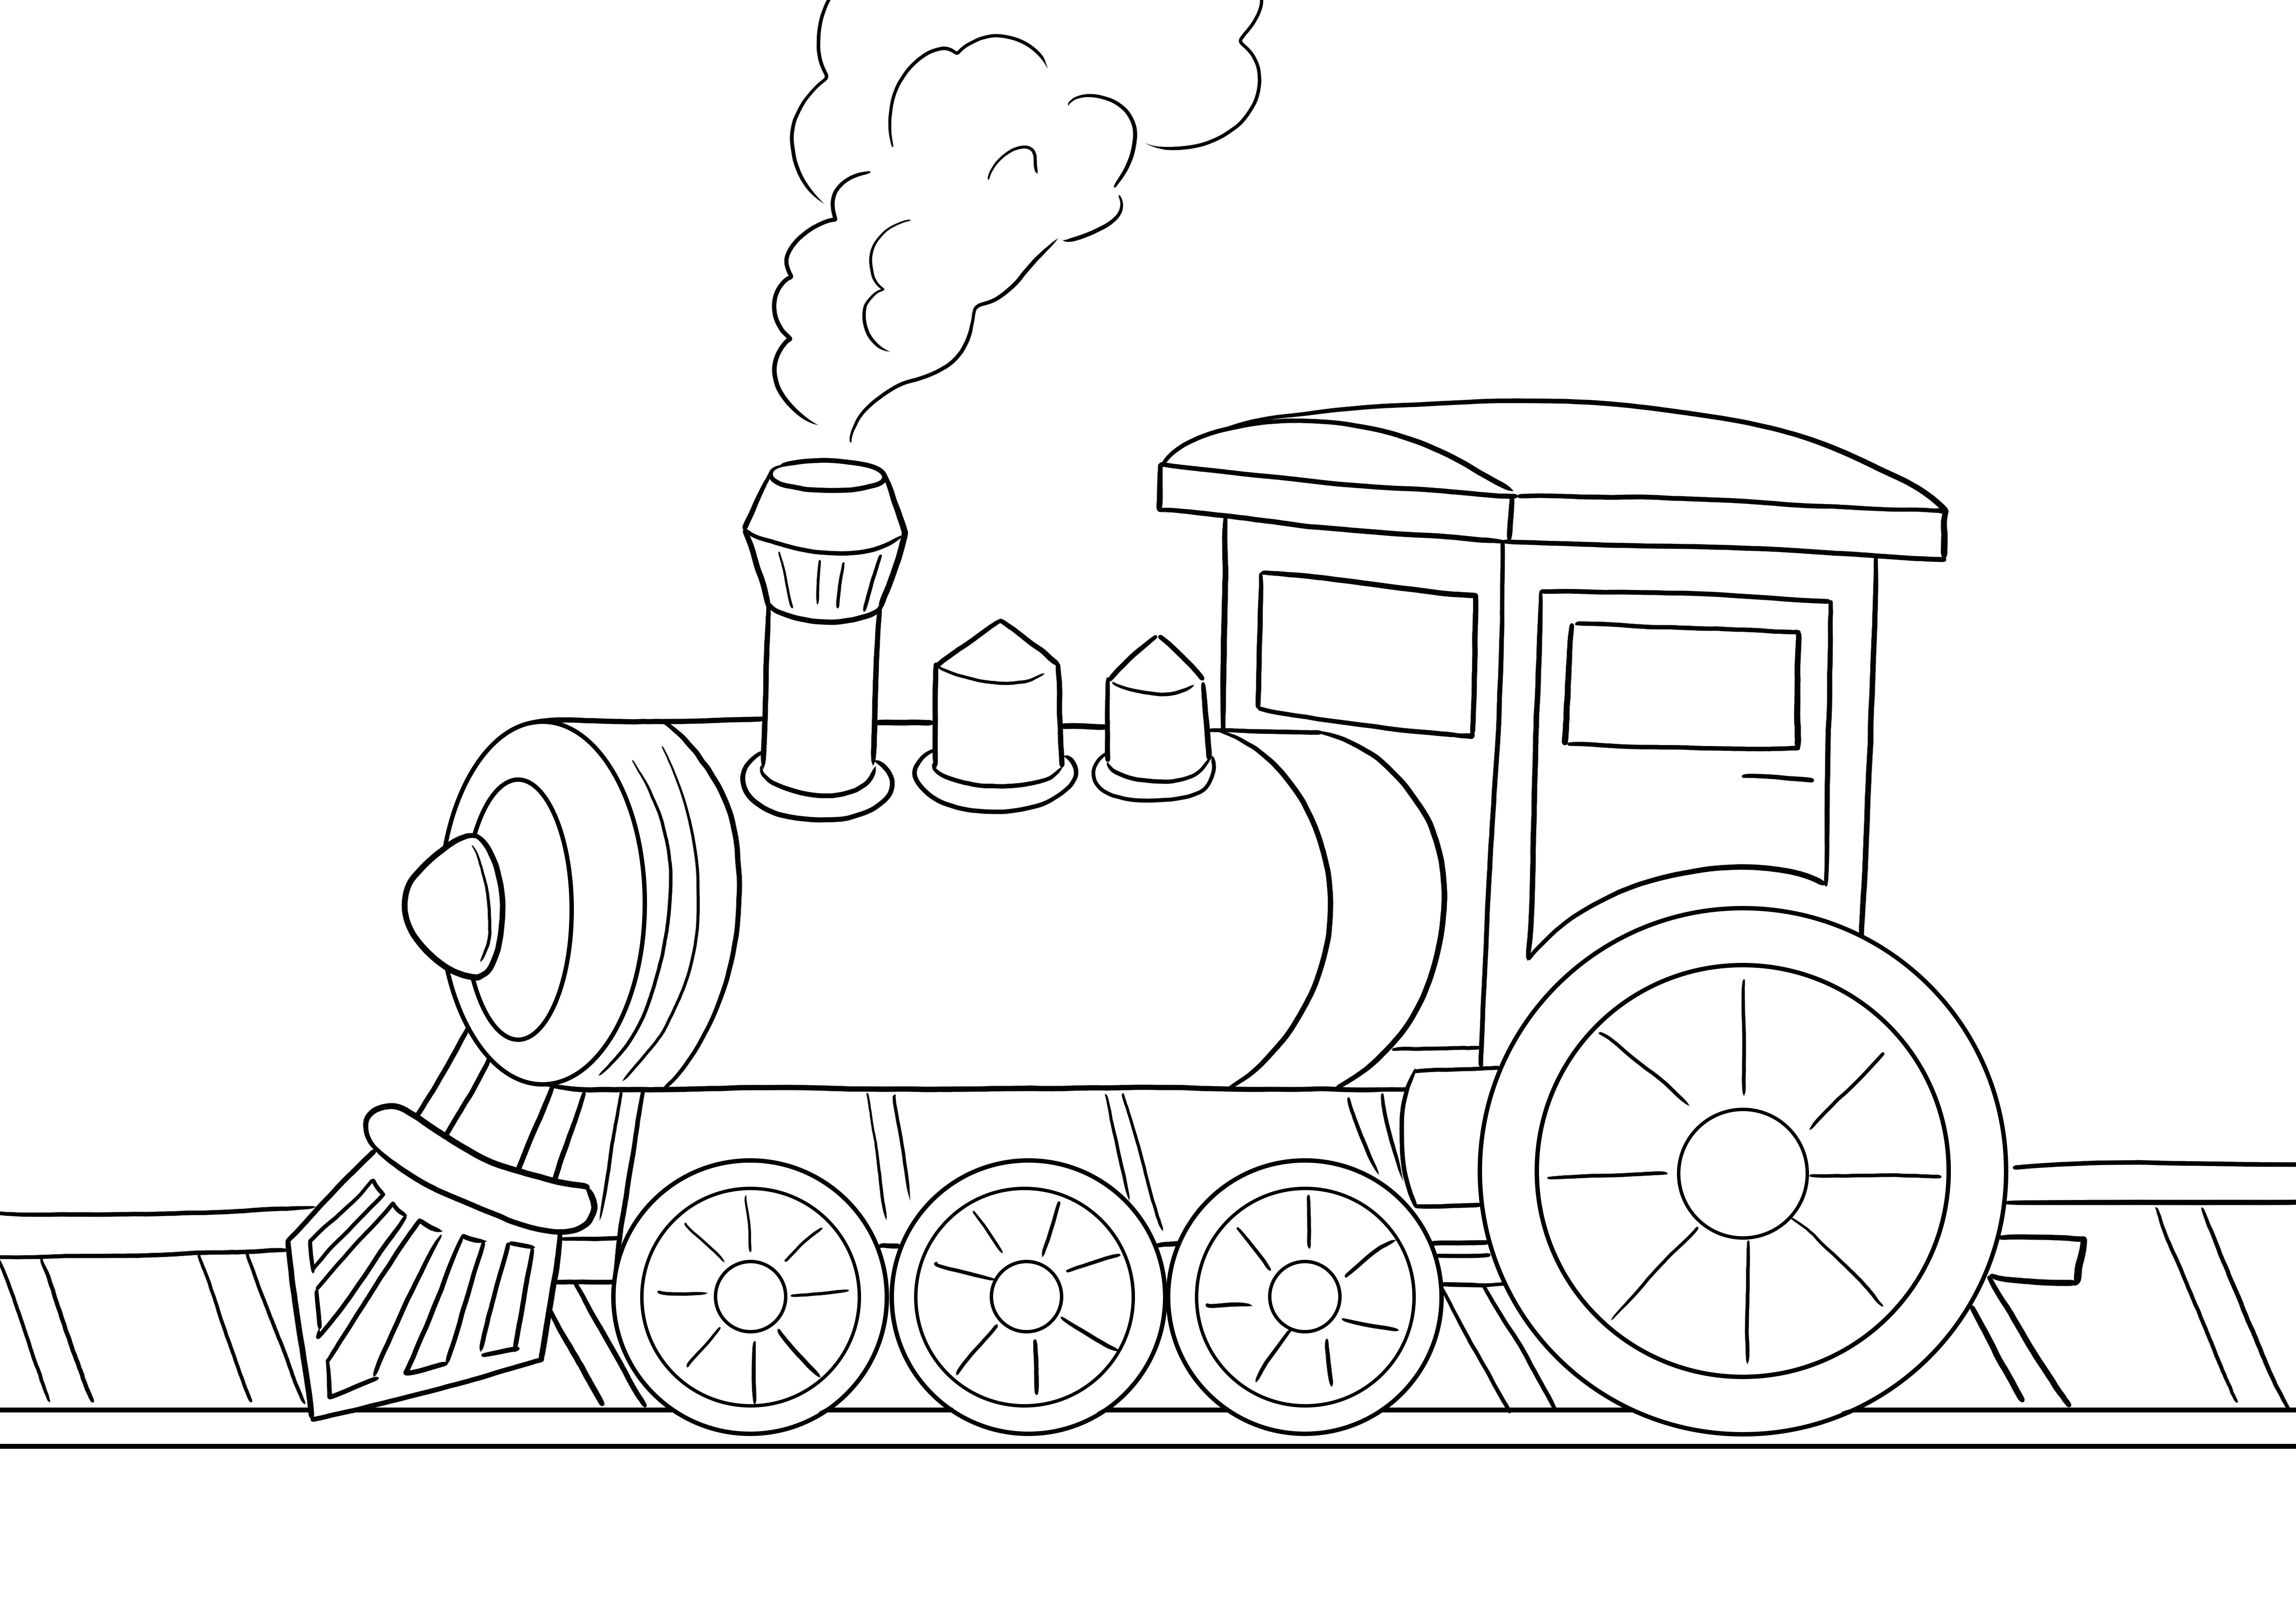 蒸気機関車は無料でダウンロードでき、簡単に色を塗って楽しく学ぶことができます